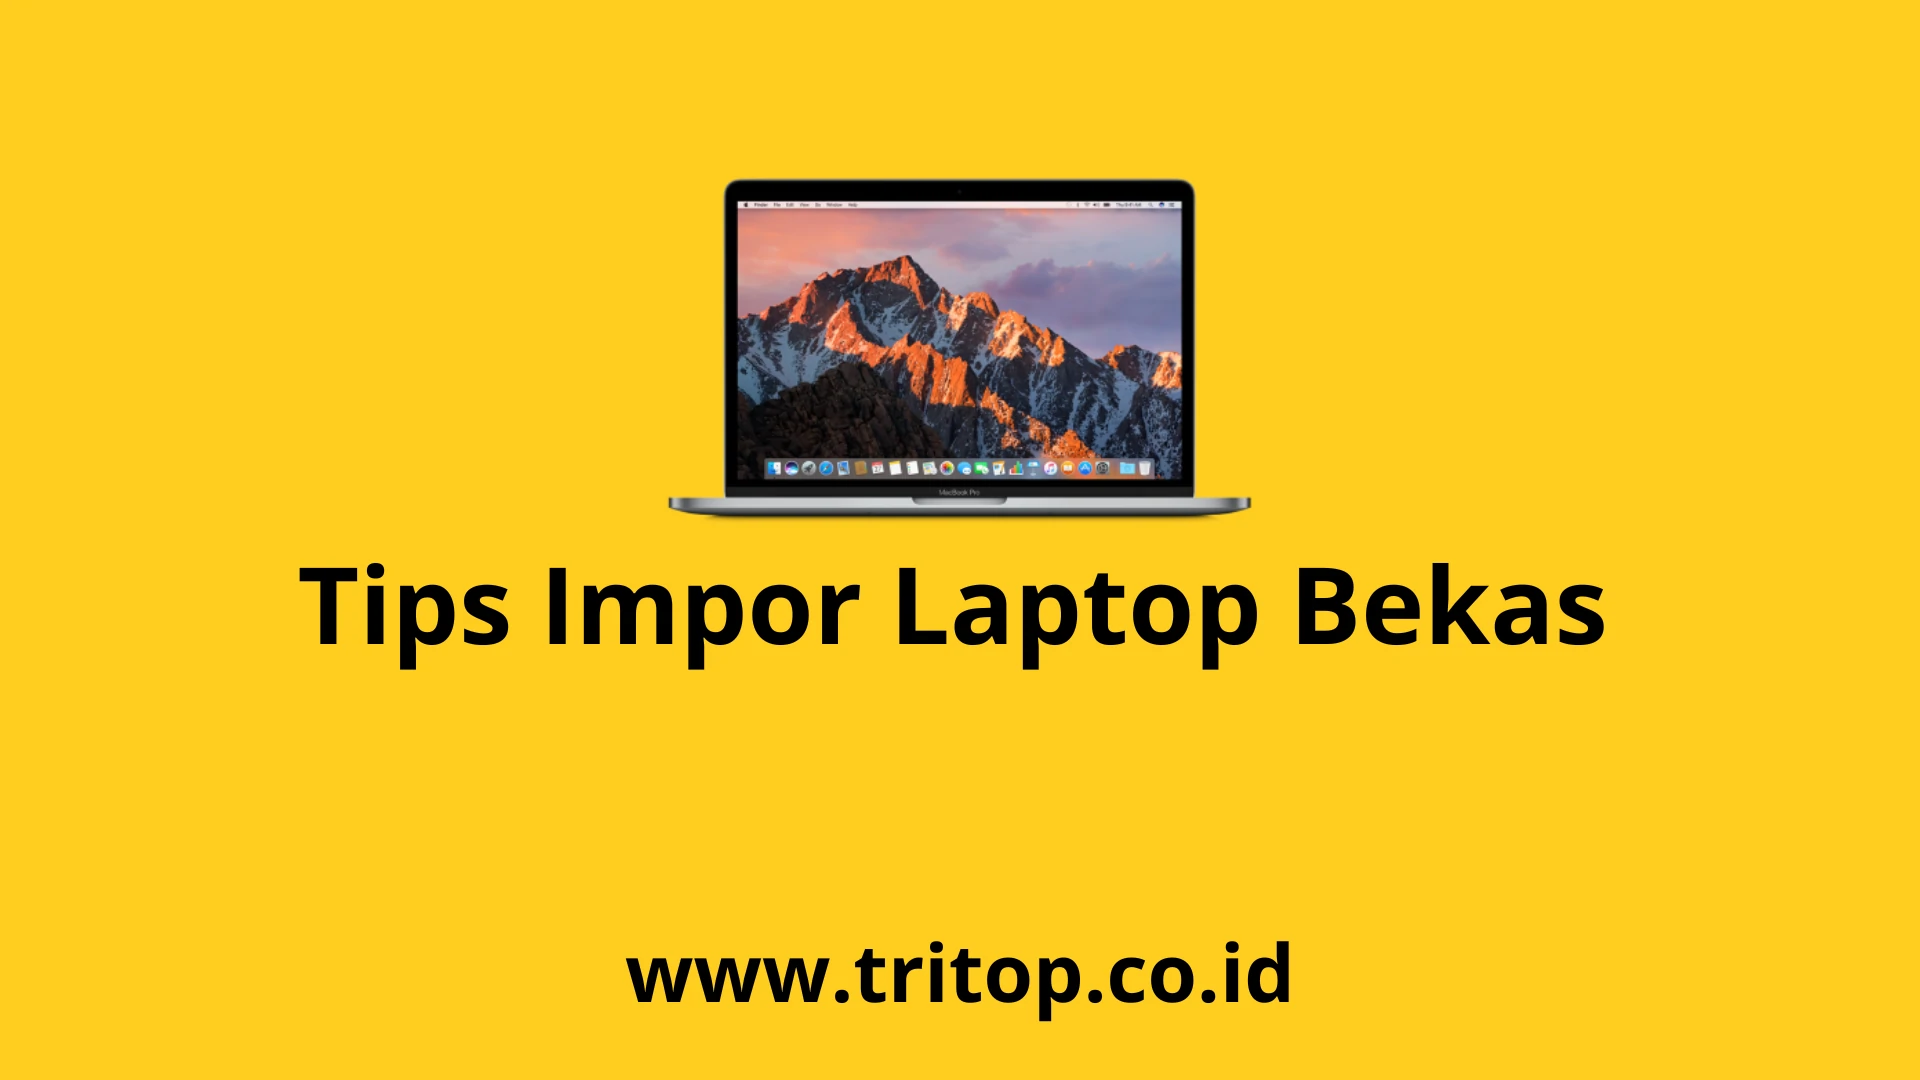 Impor Laptop Bekas Tritop.co.id